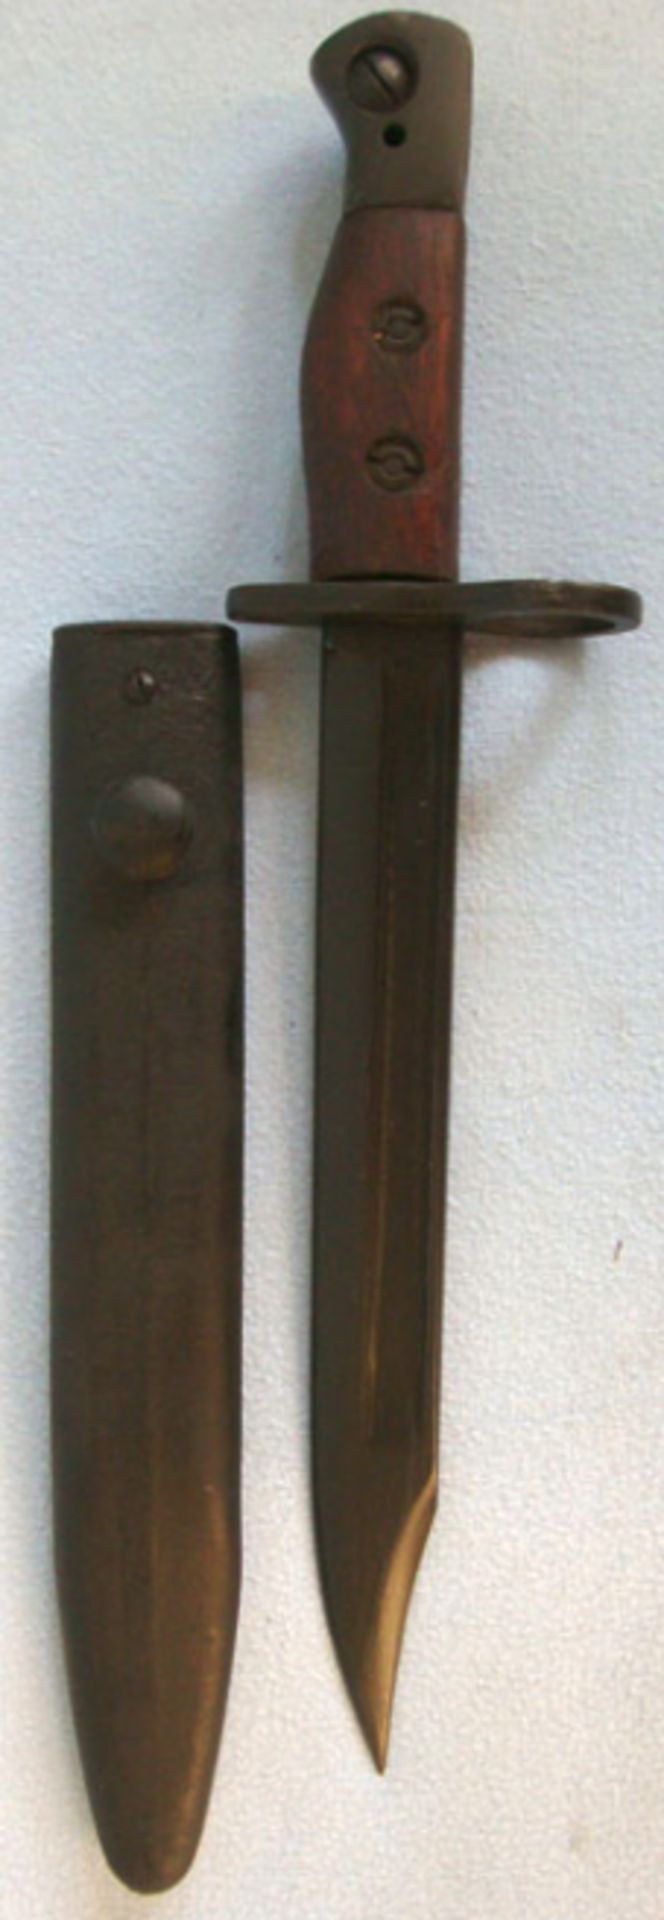 An Indian No 5 MkI Bayonet & Scabbard Made at Ishapore 1978. - Image 3 of 3